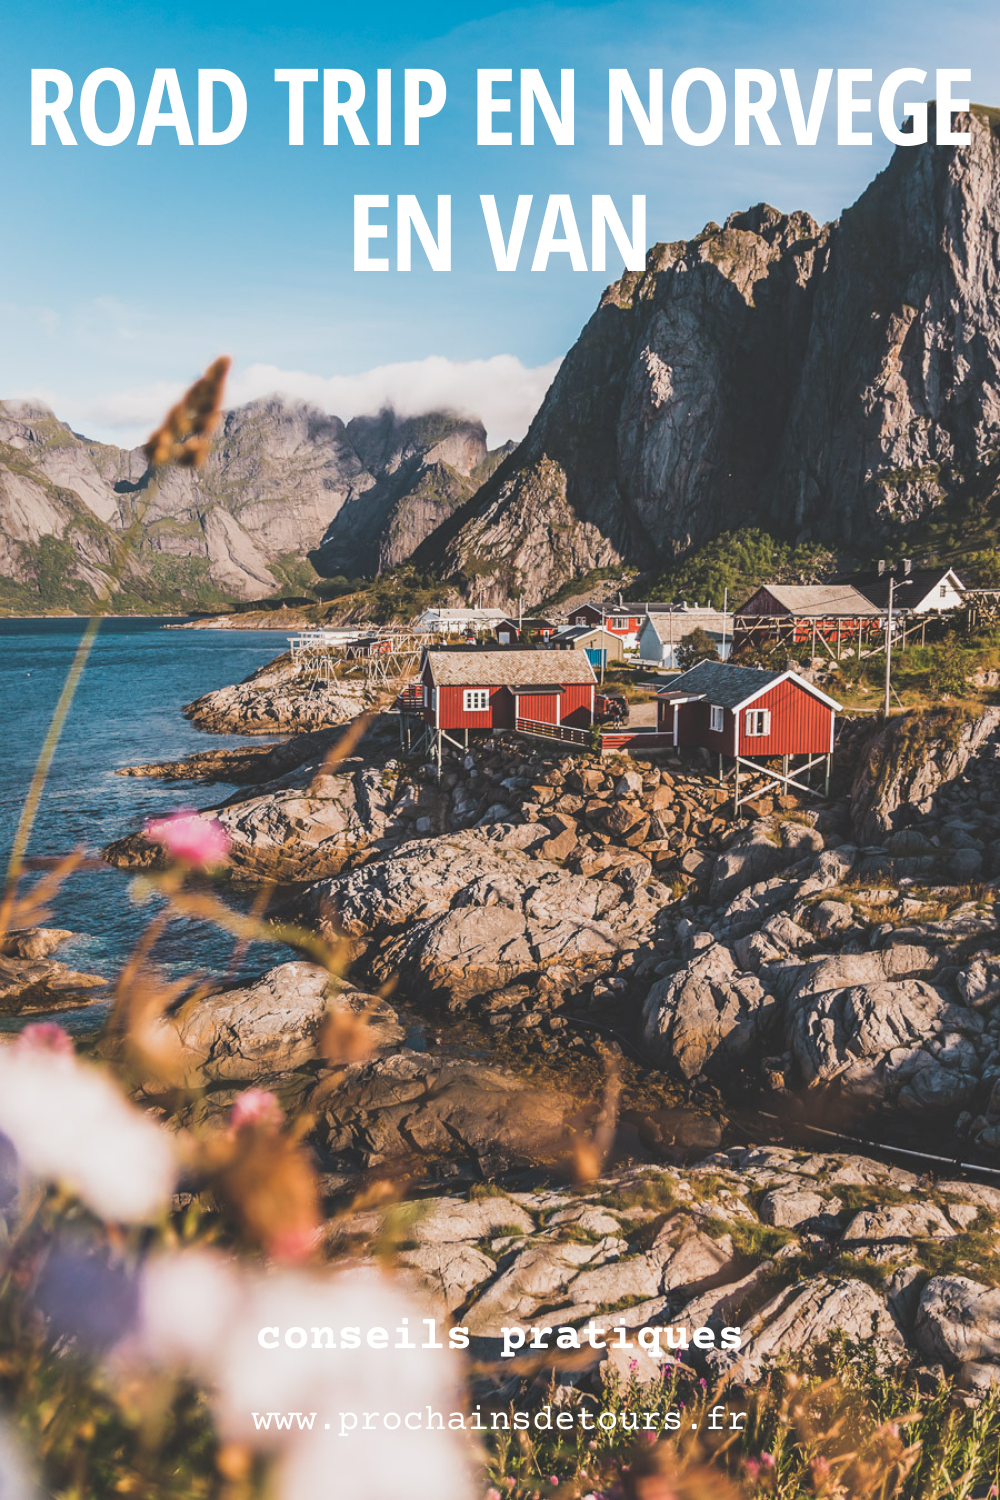 Tu souhaites organiser un road trip en Norvège en van ? Suis notre guide et trouve toutes les informations utiles. #norvège #vacances Voyage en Europe / Vacances Europe / Destinations de voyages / Bucket list travel / Idées de voyages / Europe travel / Scandinavie paysage / Scandinavie design / Scandinavia / norvege paysage / norvege voyage / norvege aesthetic / Norvège paysage / Norvège fjord / road trip norvege été / road trip en norvege / road trip van norvege / norvege van / fjord norvege